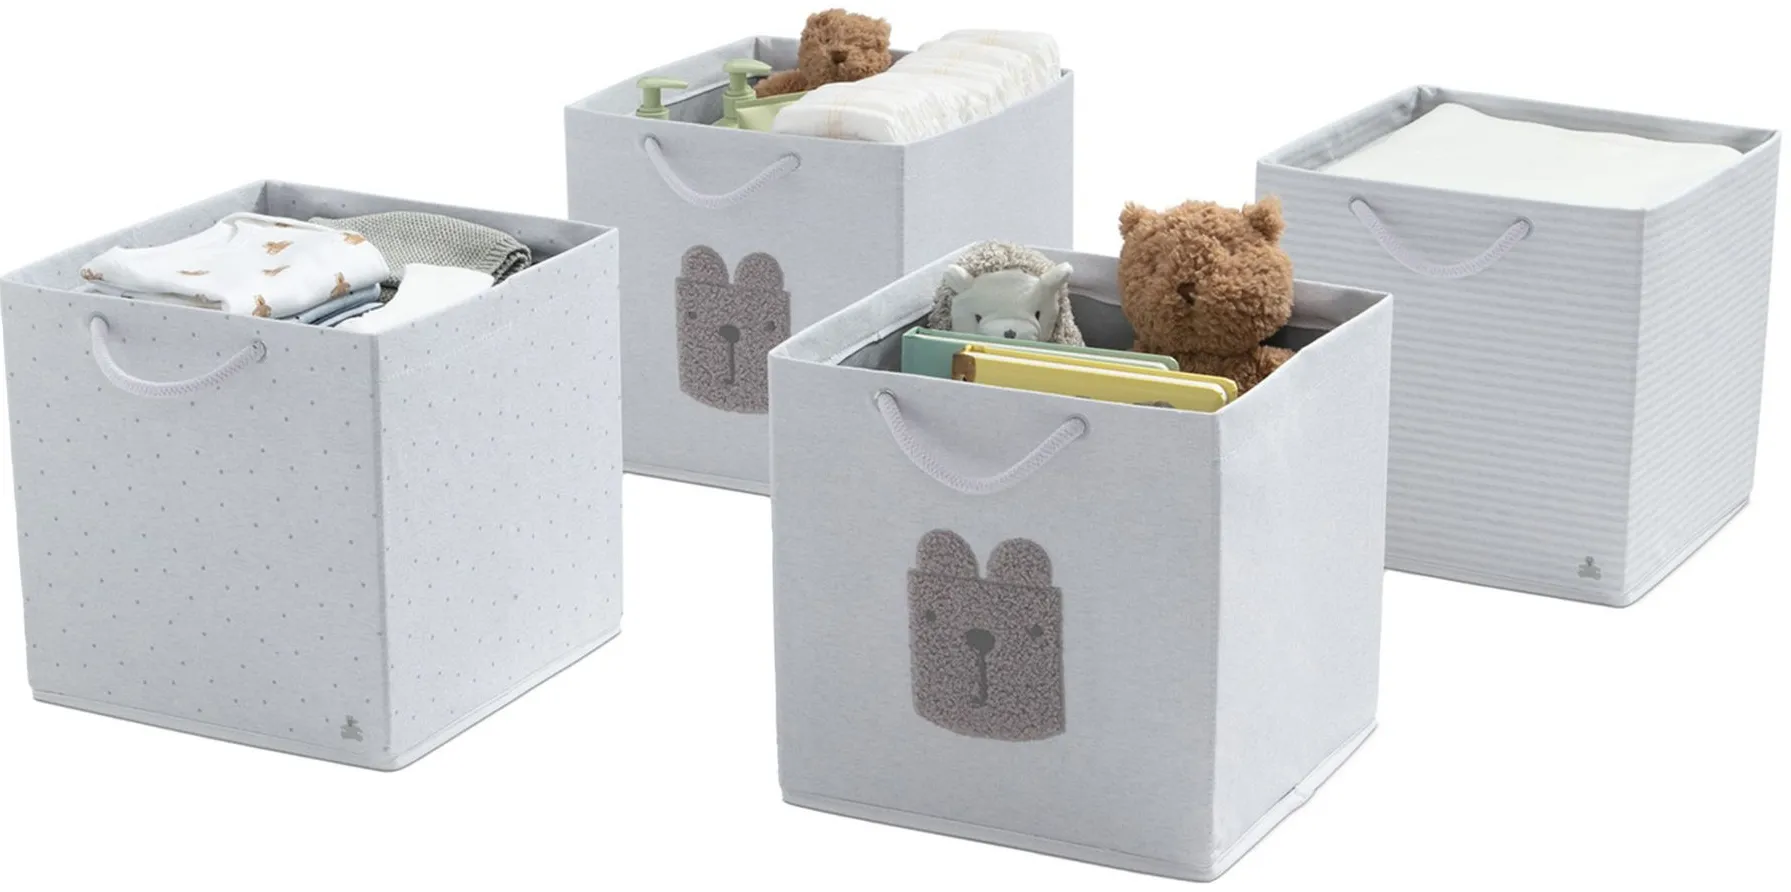 BabyGap 4-Pack Storage Bins with Handles by Delta Children in Gray by Delta Children